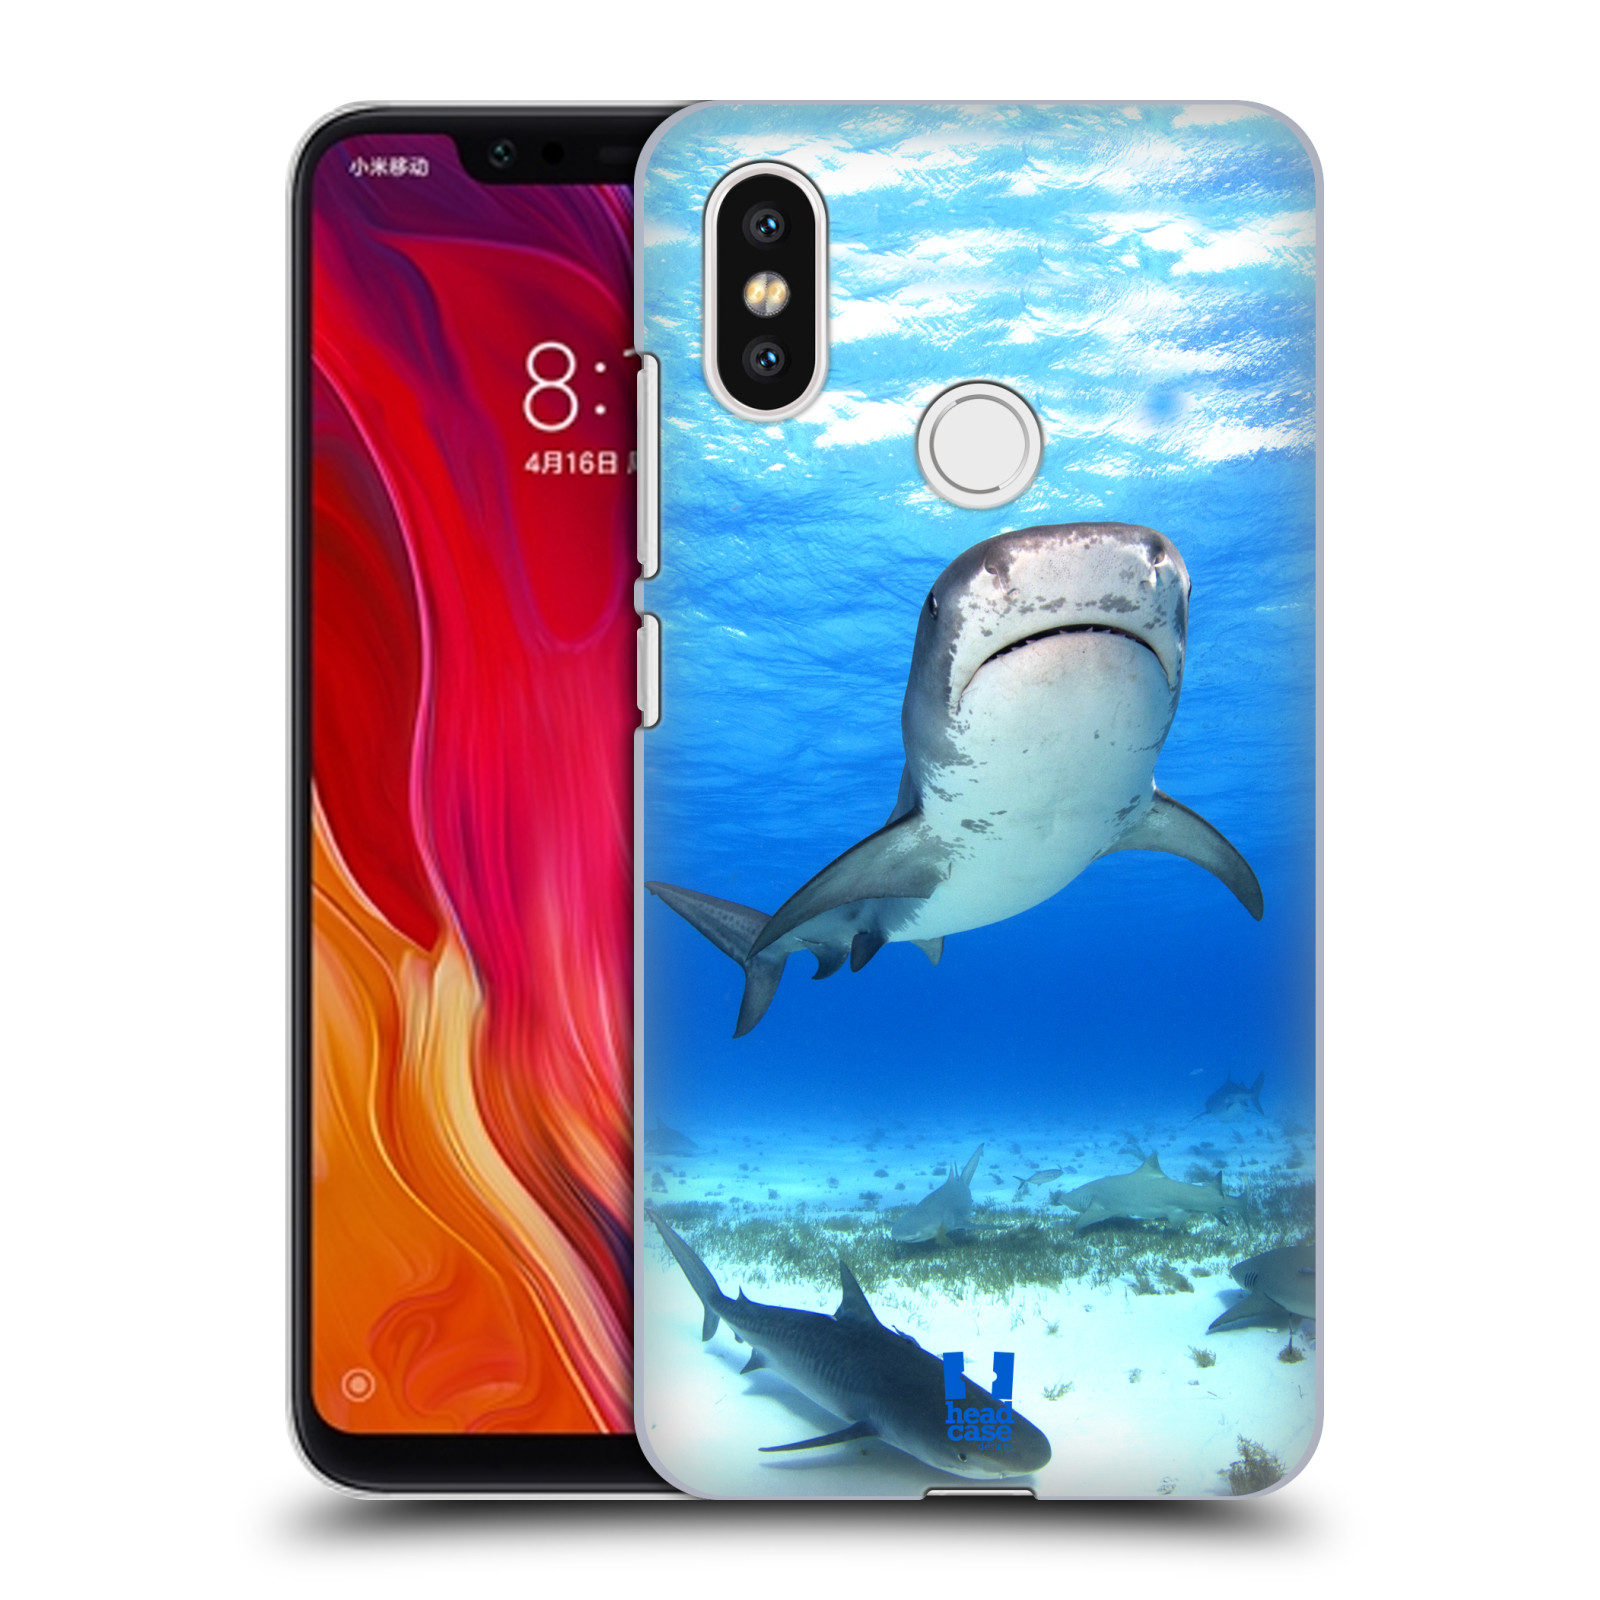 HEAD CASE plastový obal na mobil Xiaomi Mi 8 vzor slavná zvířata foto žralok tygří